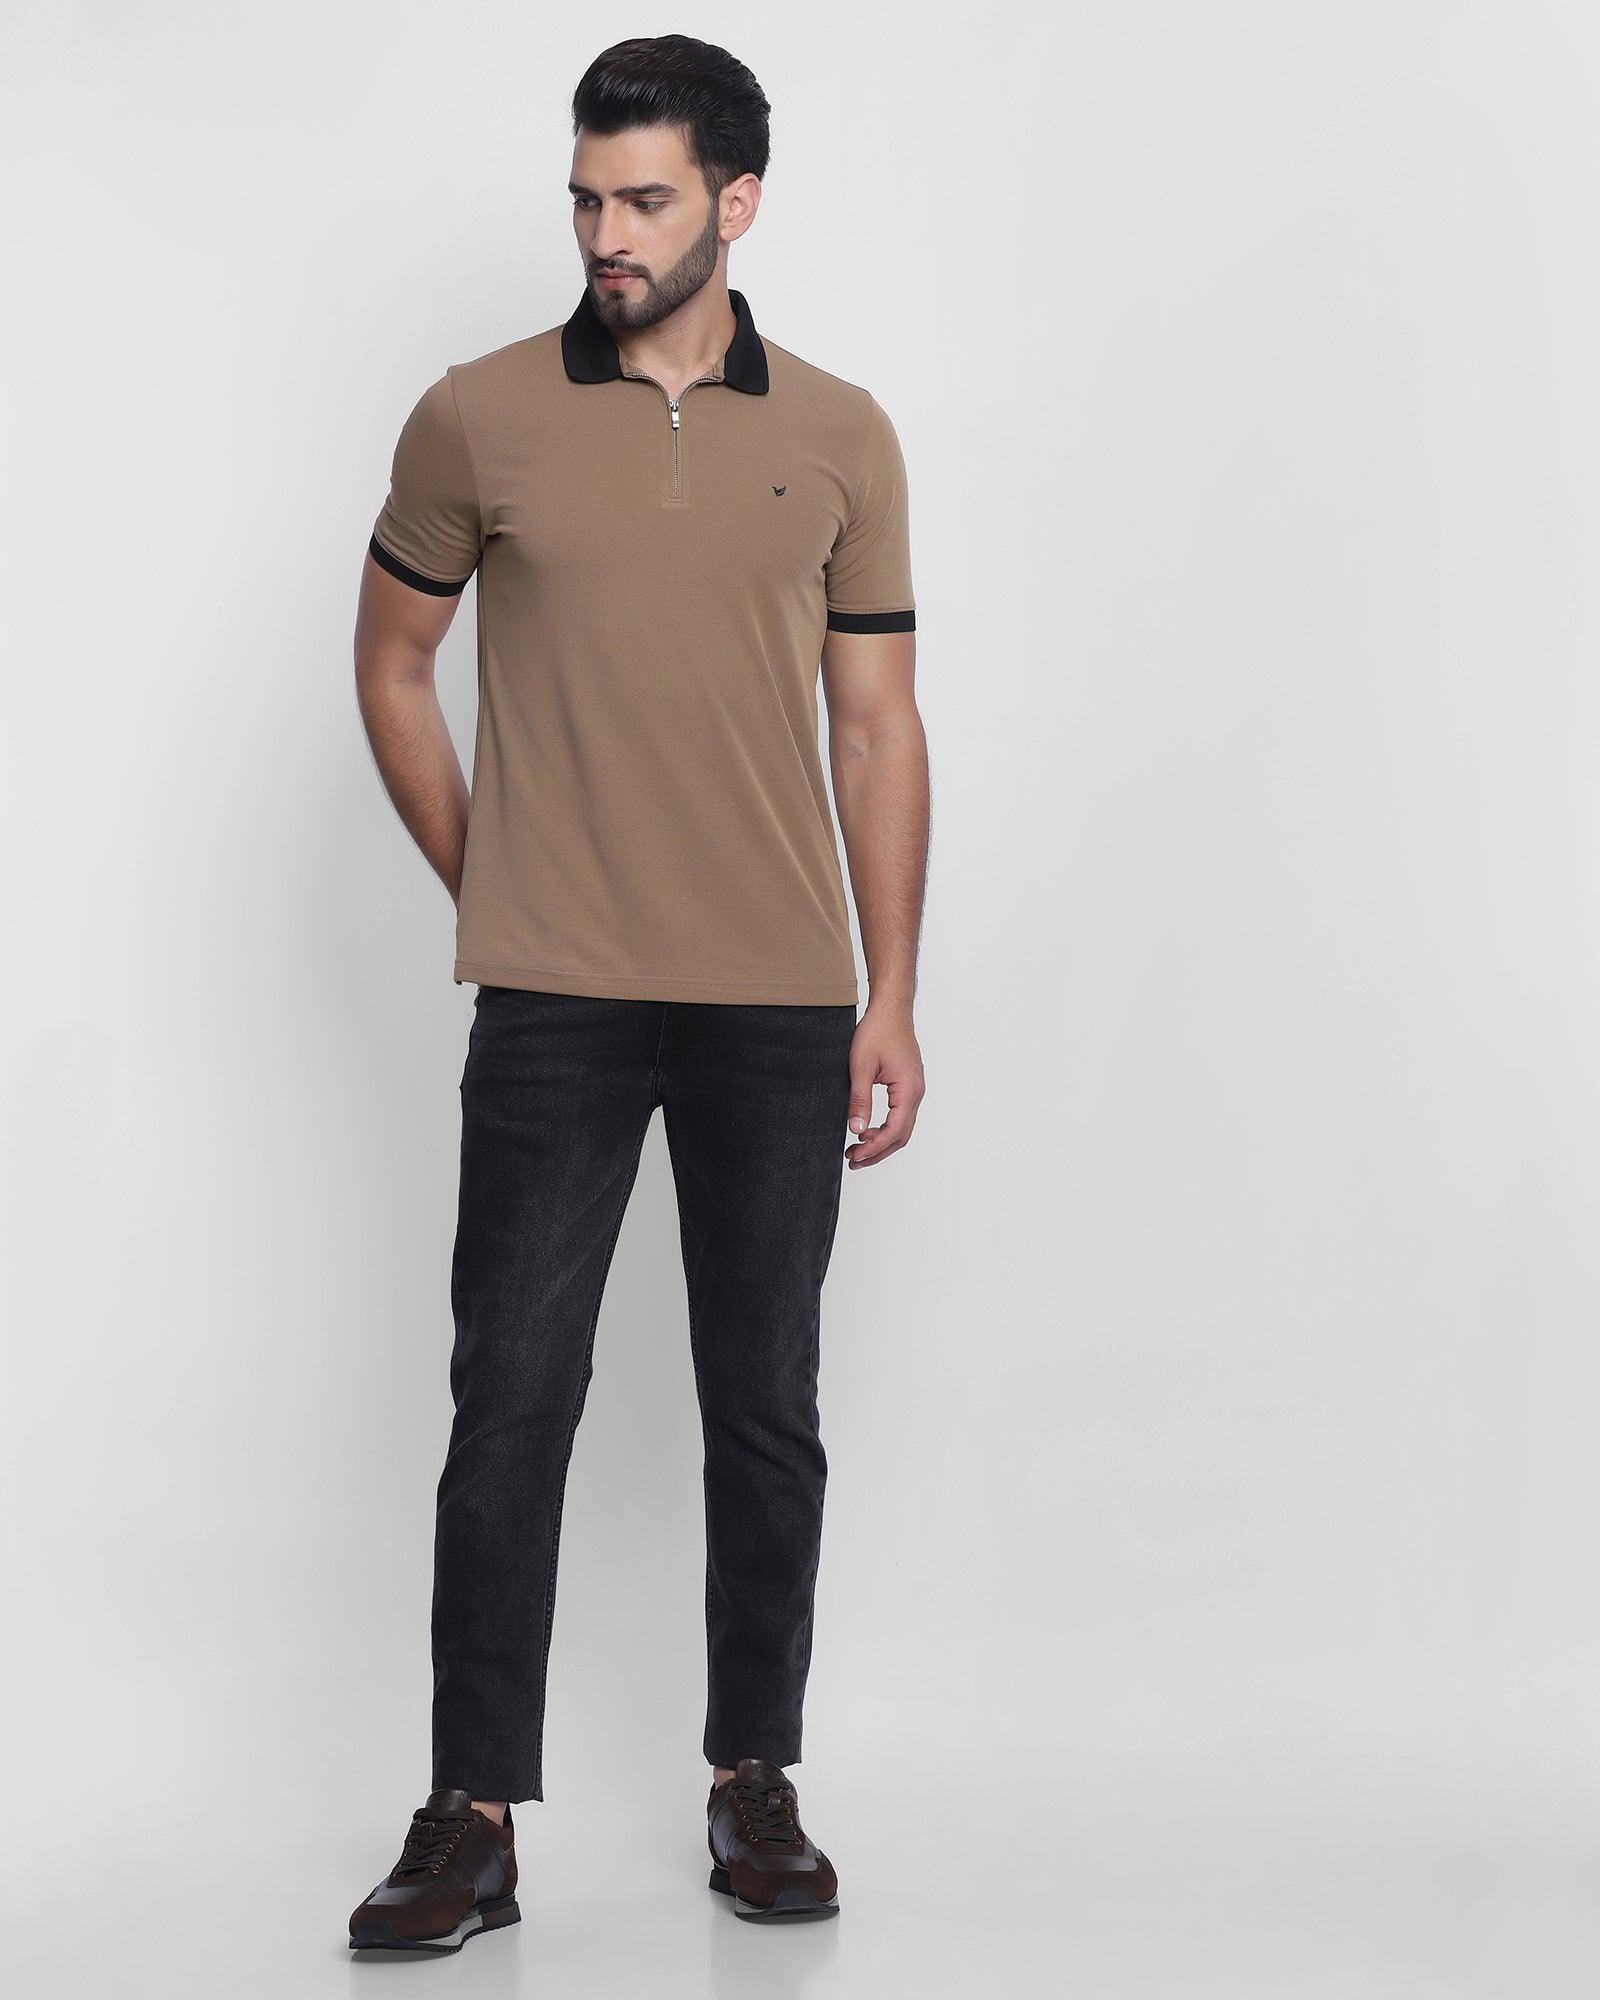 TechPro Polo Khaki Solid T Shirt - Elite